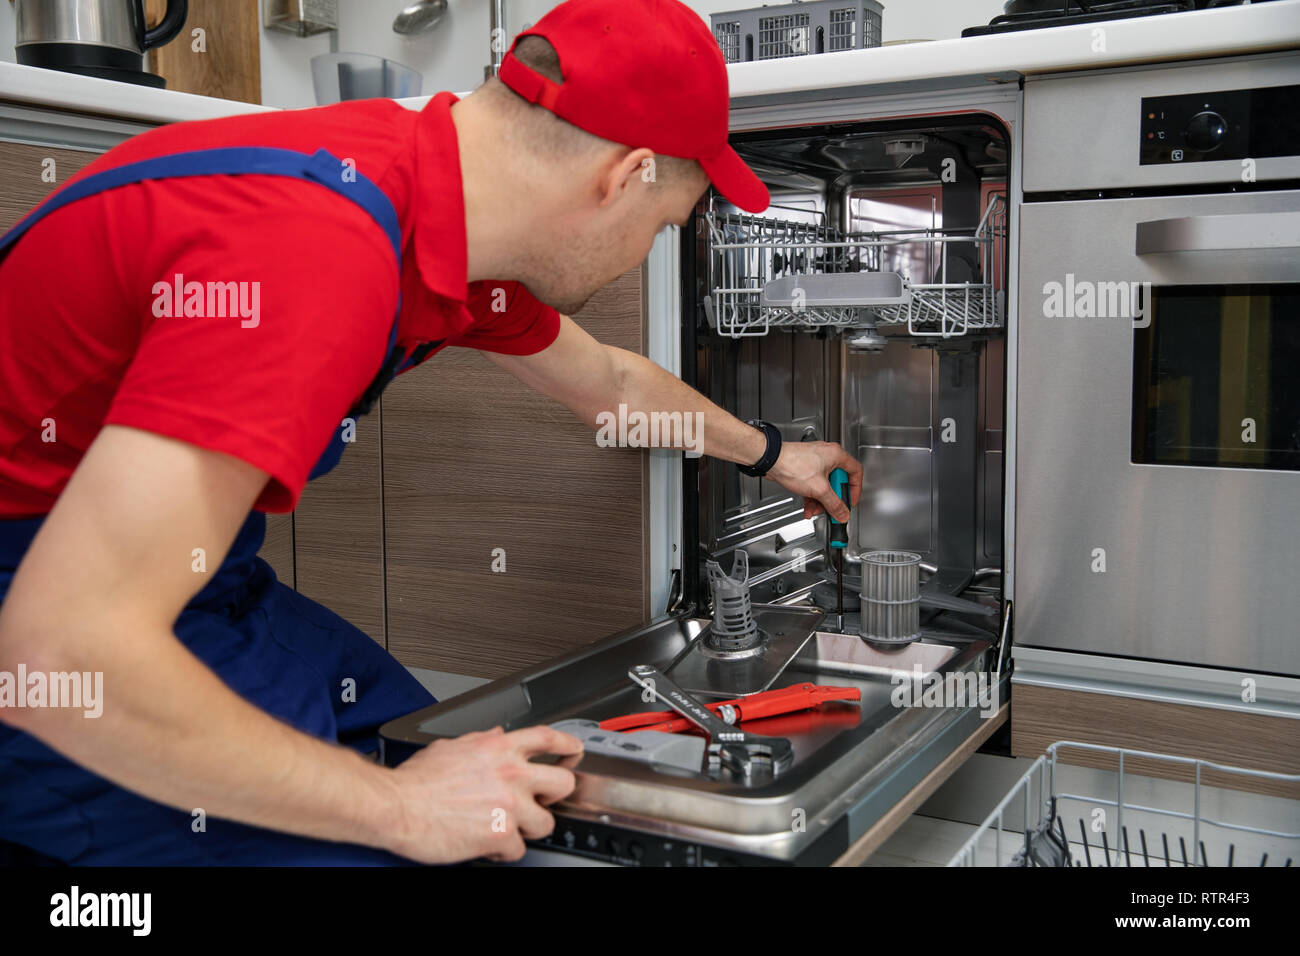 Aparato doméstico - mantenimiento técnico de reparación de lavavajillas en la cocina Foto de stock